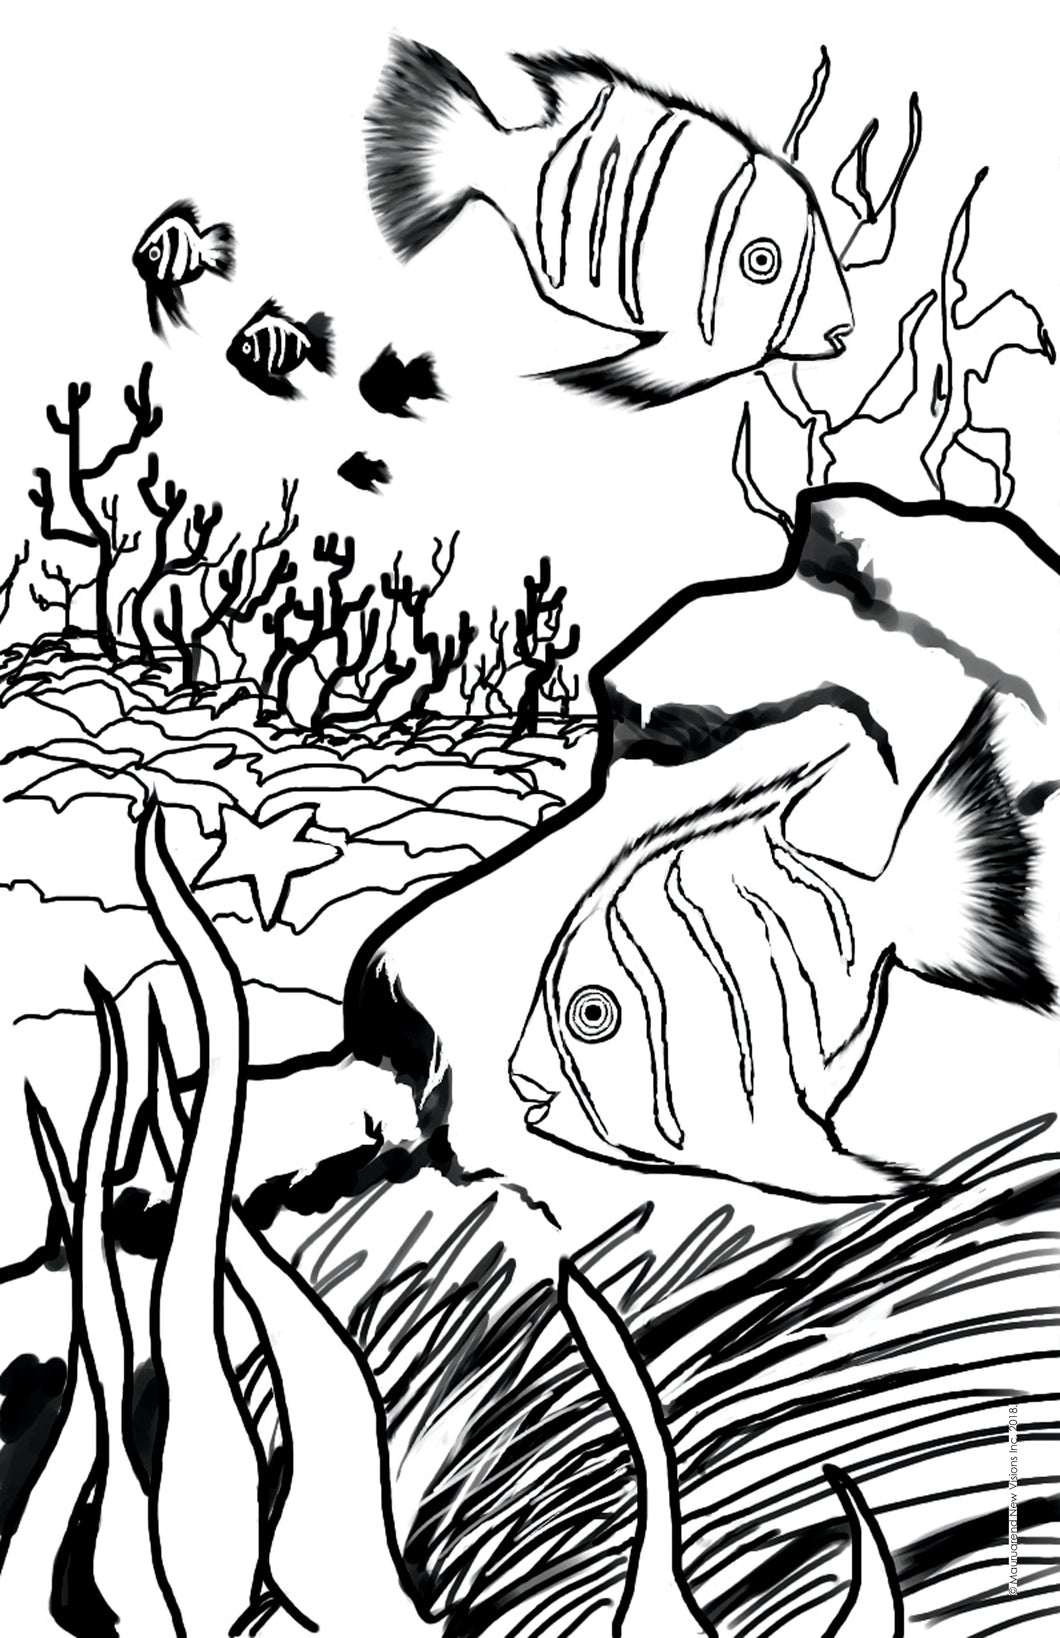 Vybin Art, Angelfish, printable coloring page